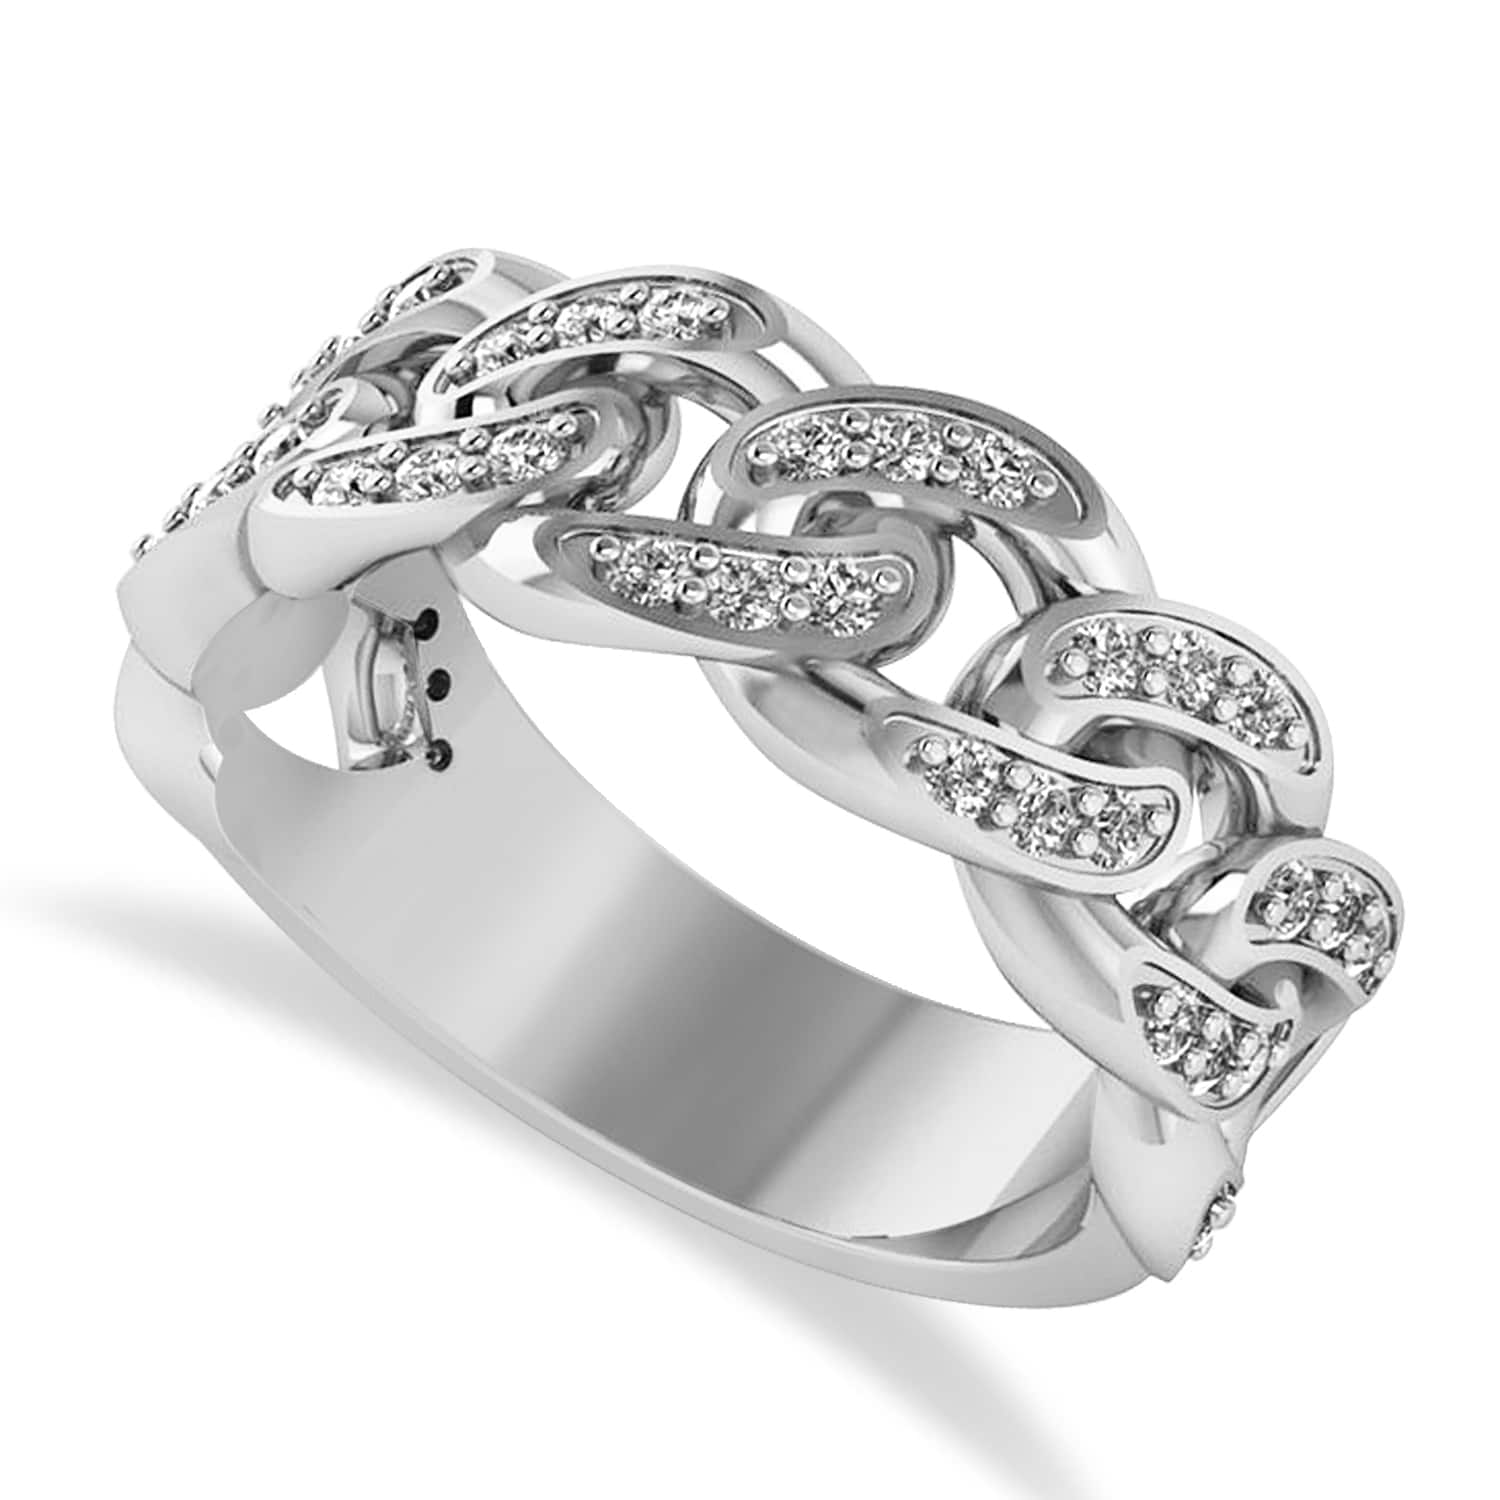 Diamond Novelty Chain Men's Ring 14k White Gold (0.63ct)